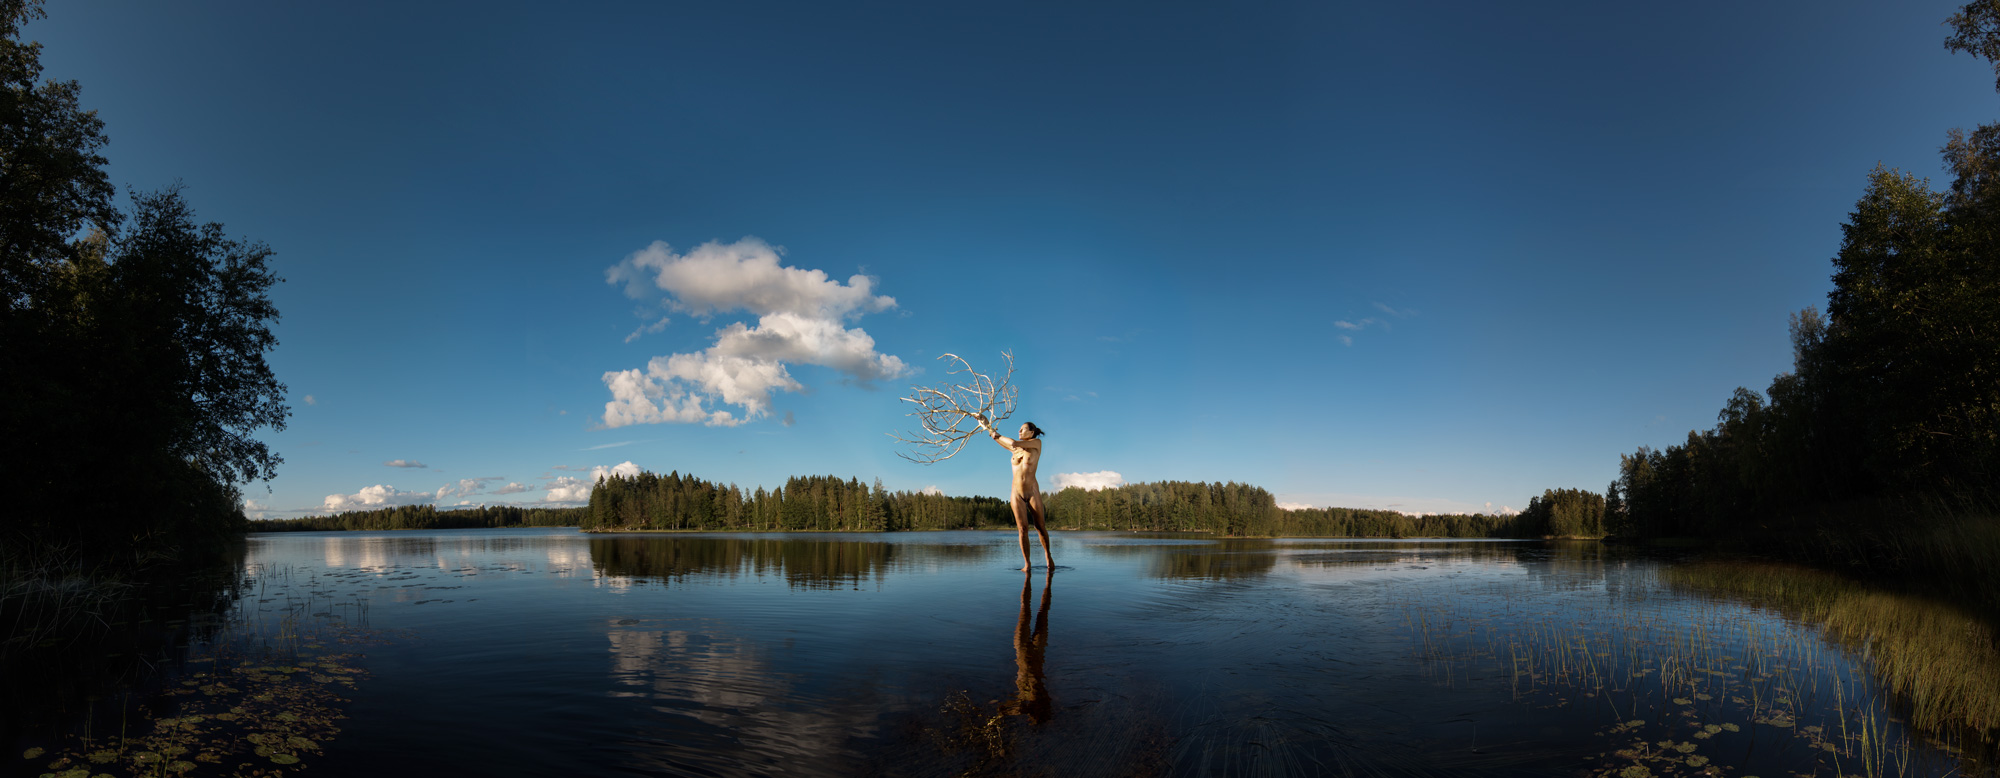 KÄÄNNA JUURI XIII. Fotografía y retoque digital. Lago Kelhajarvi, Hämeenkyrö, Finlandia